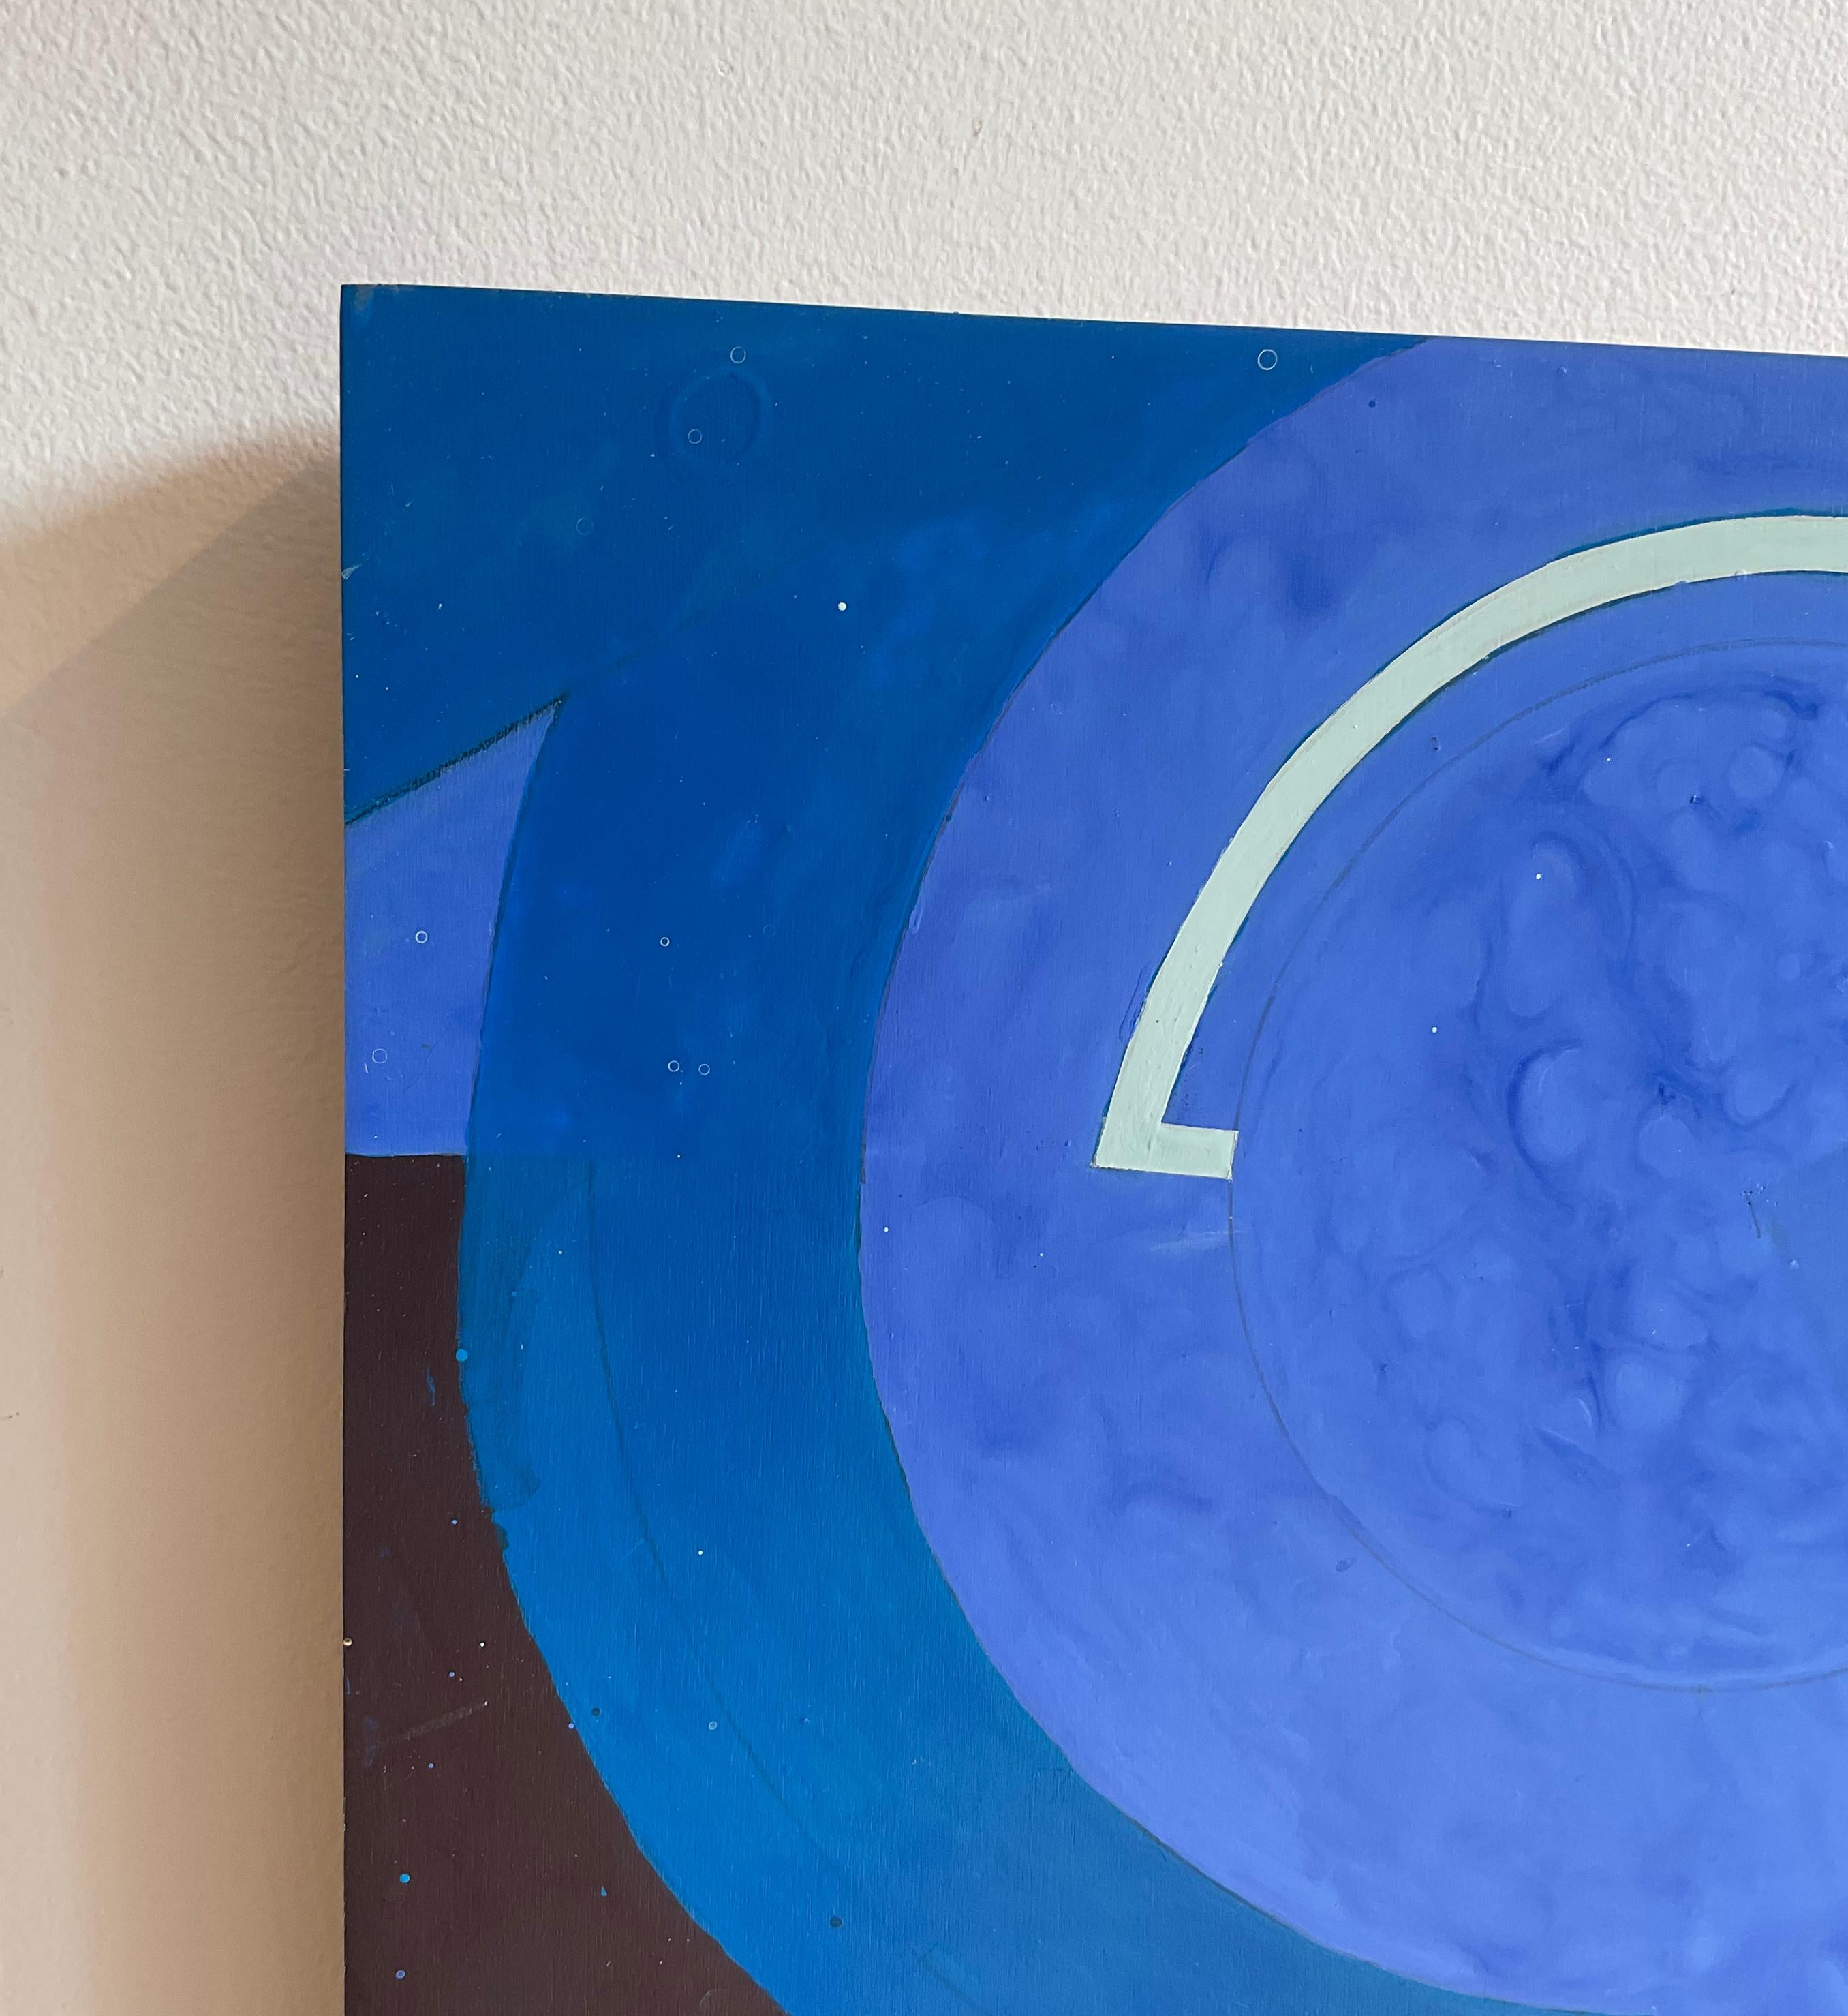 Divining Blue n°1 (peinture abstraite géométrique imbriquée en bleu et noir) - Bleu Abstract Painting par Jeanette Fintz